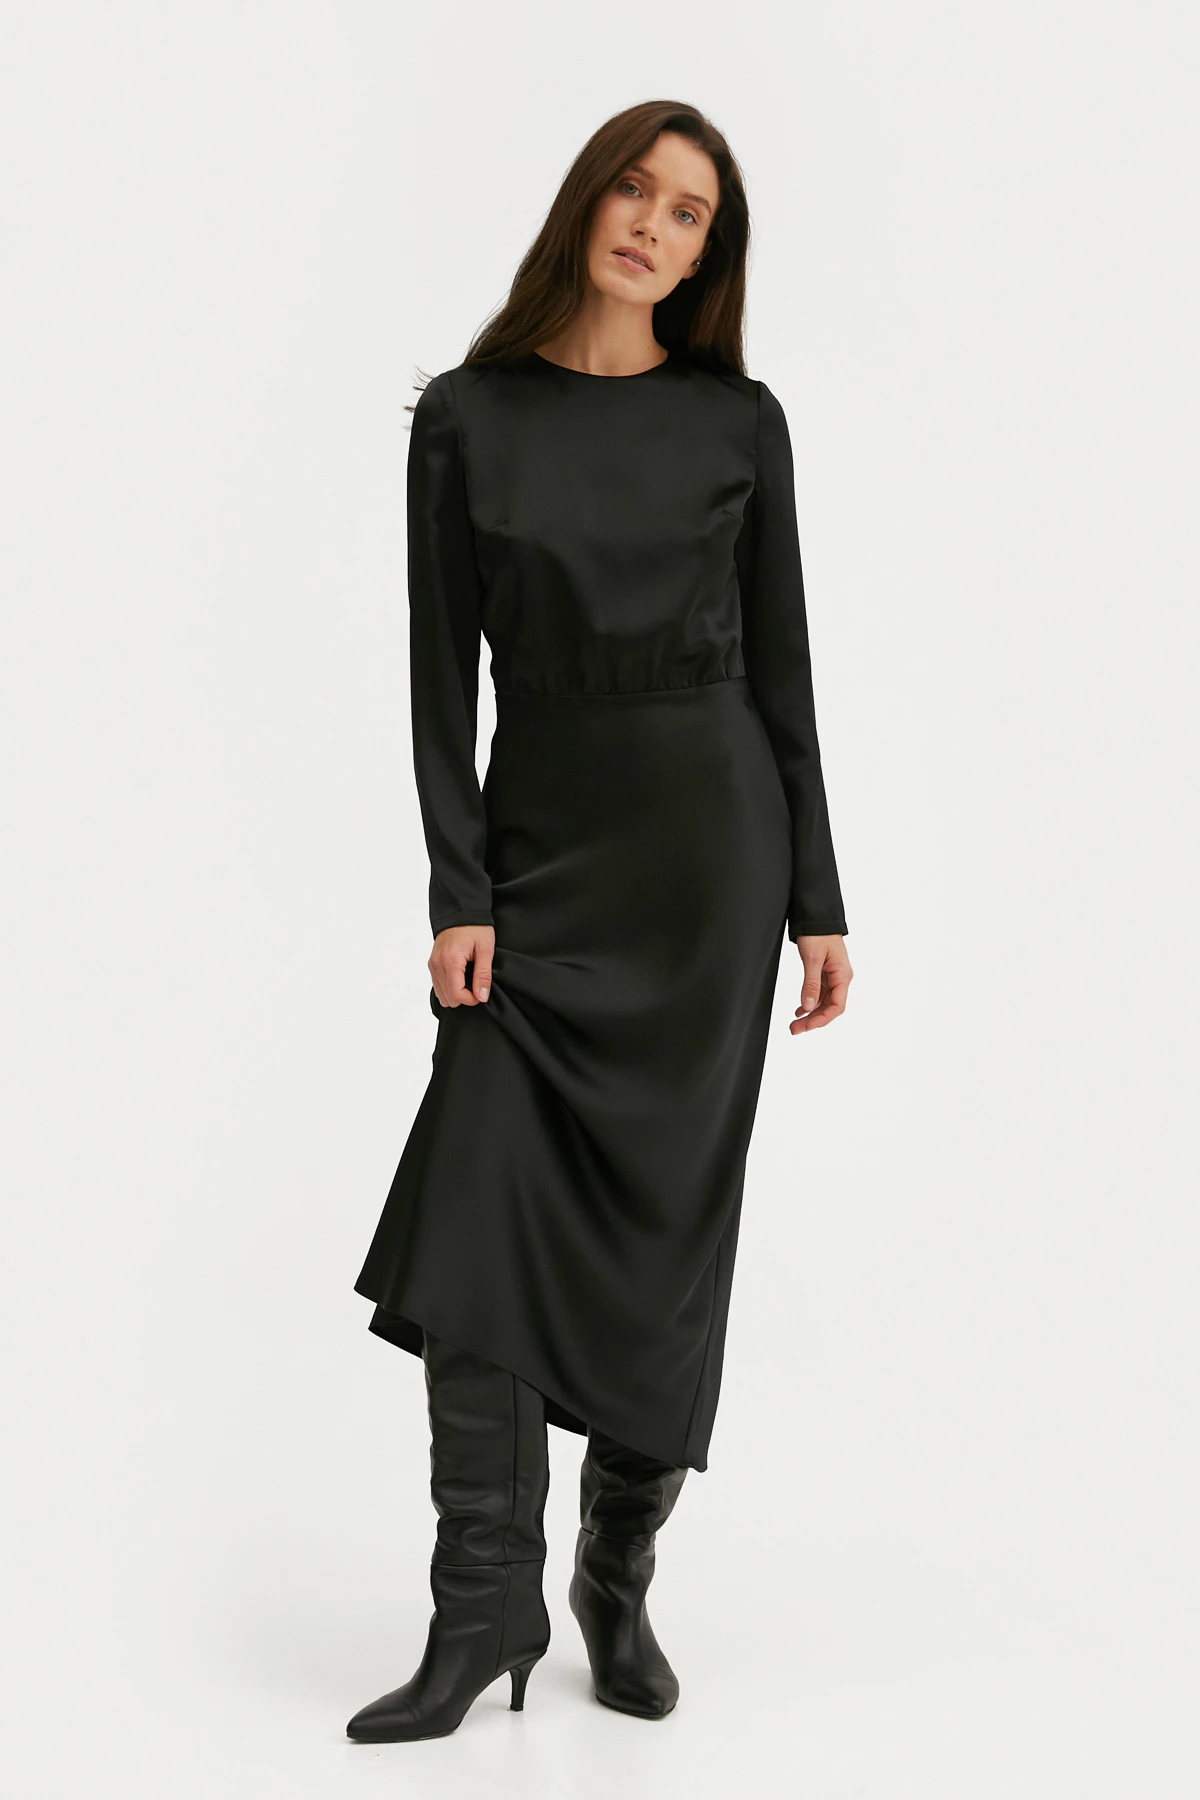 Сатинова сукня з рукавами чорного кольору, фото 2